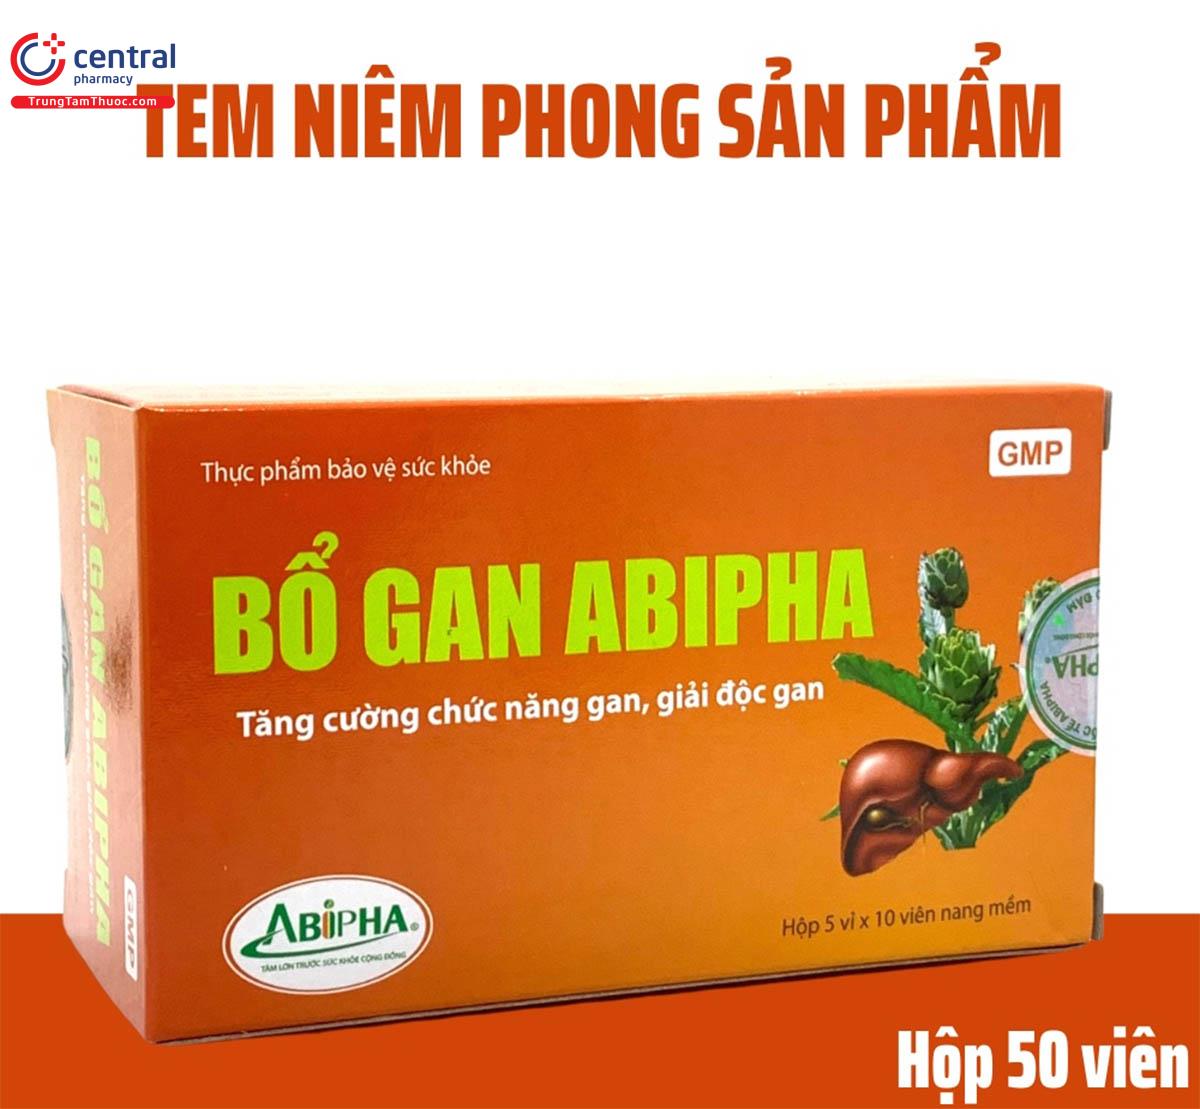 Bổ Gan Abipha giúp tăng cường chức năng gan